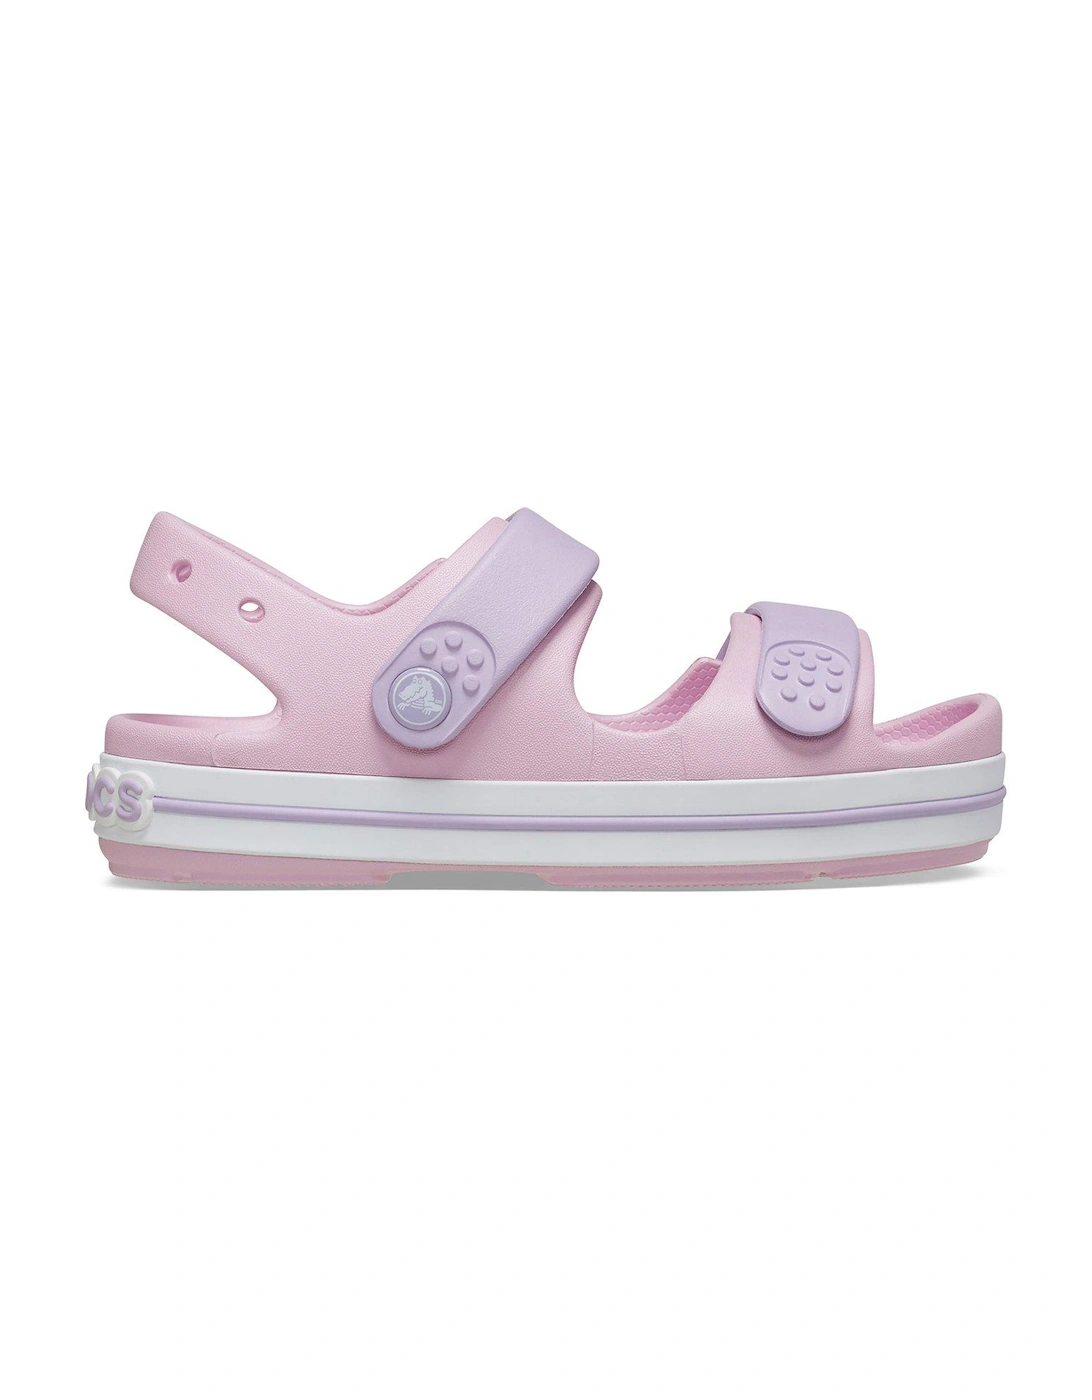 Ballerina/lavender Crocband Cruiser Sandal, 2 of 1